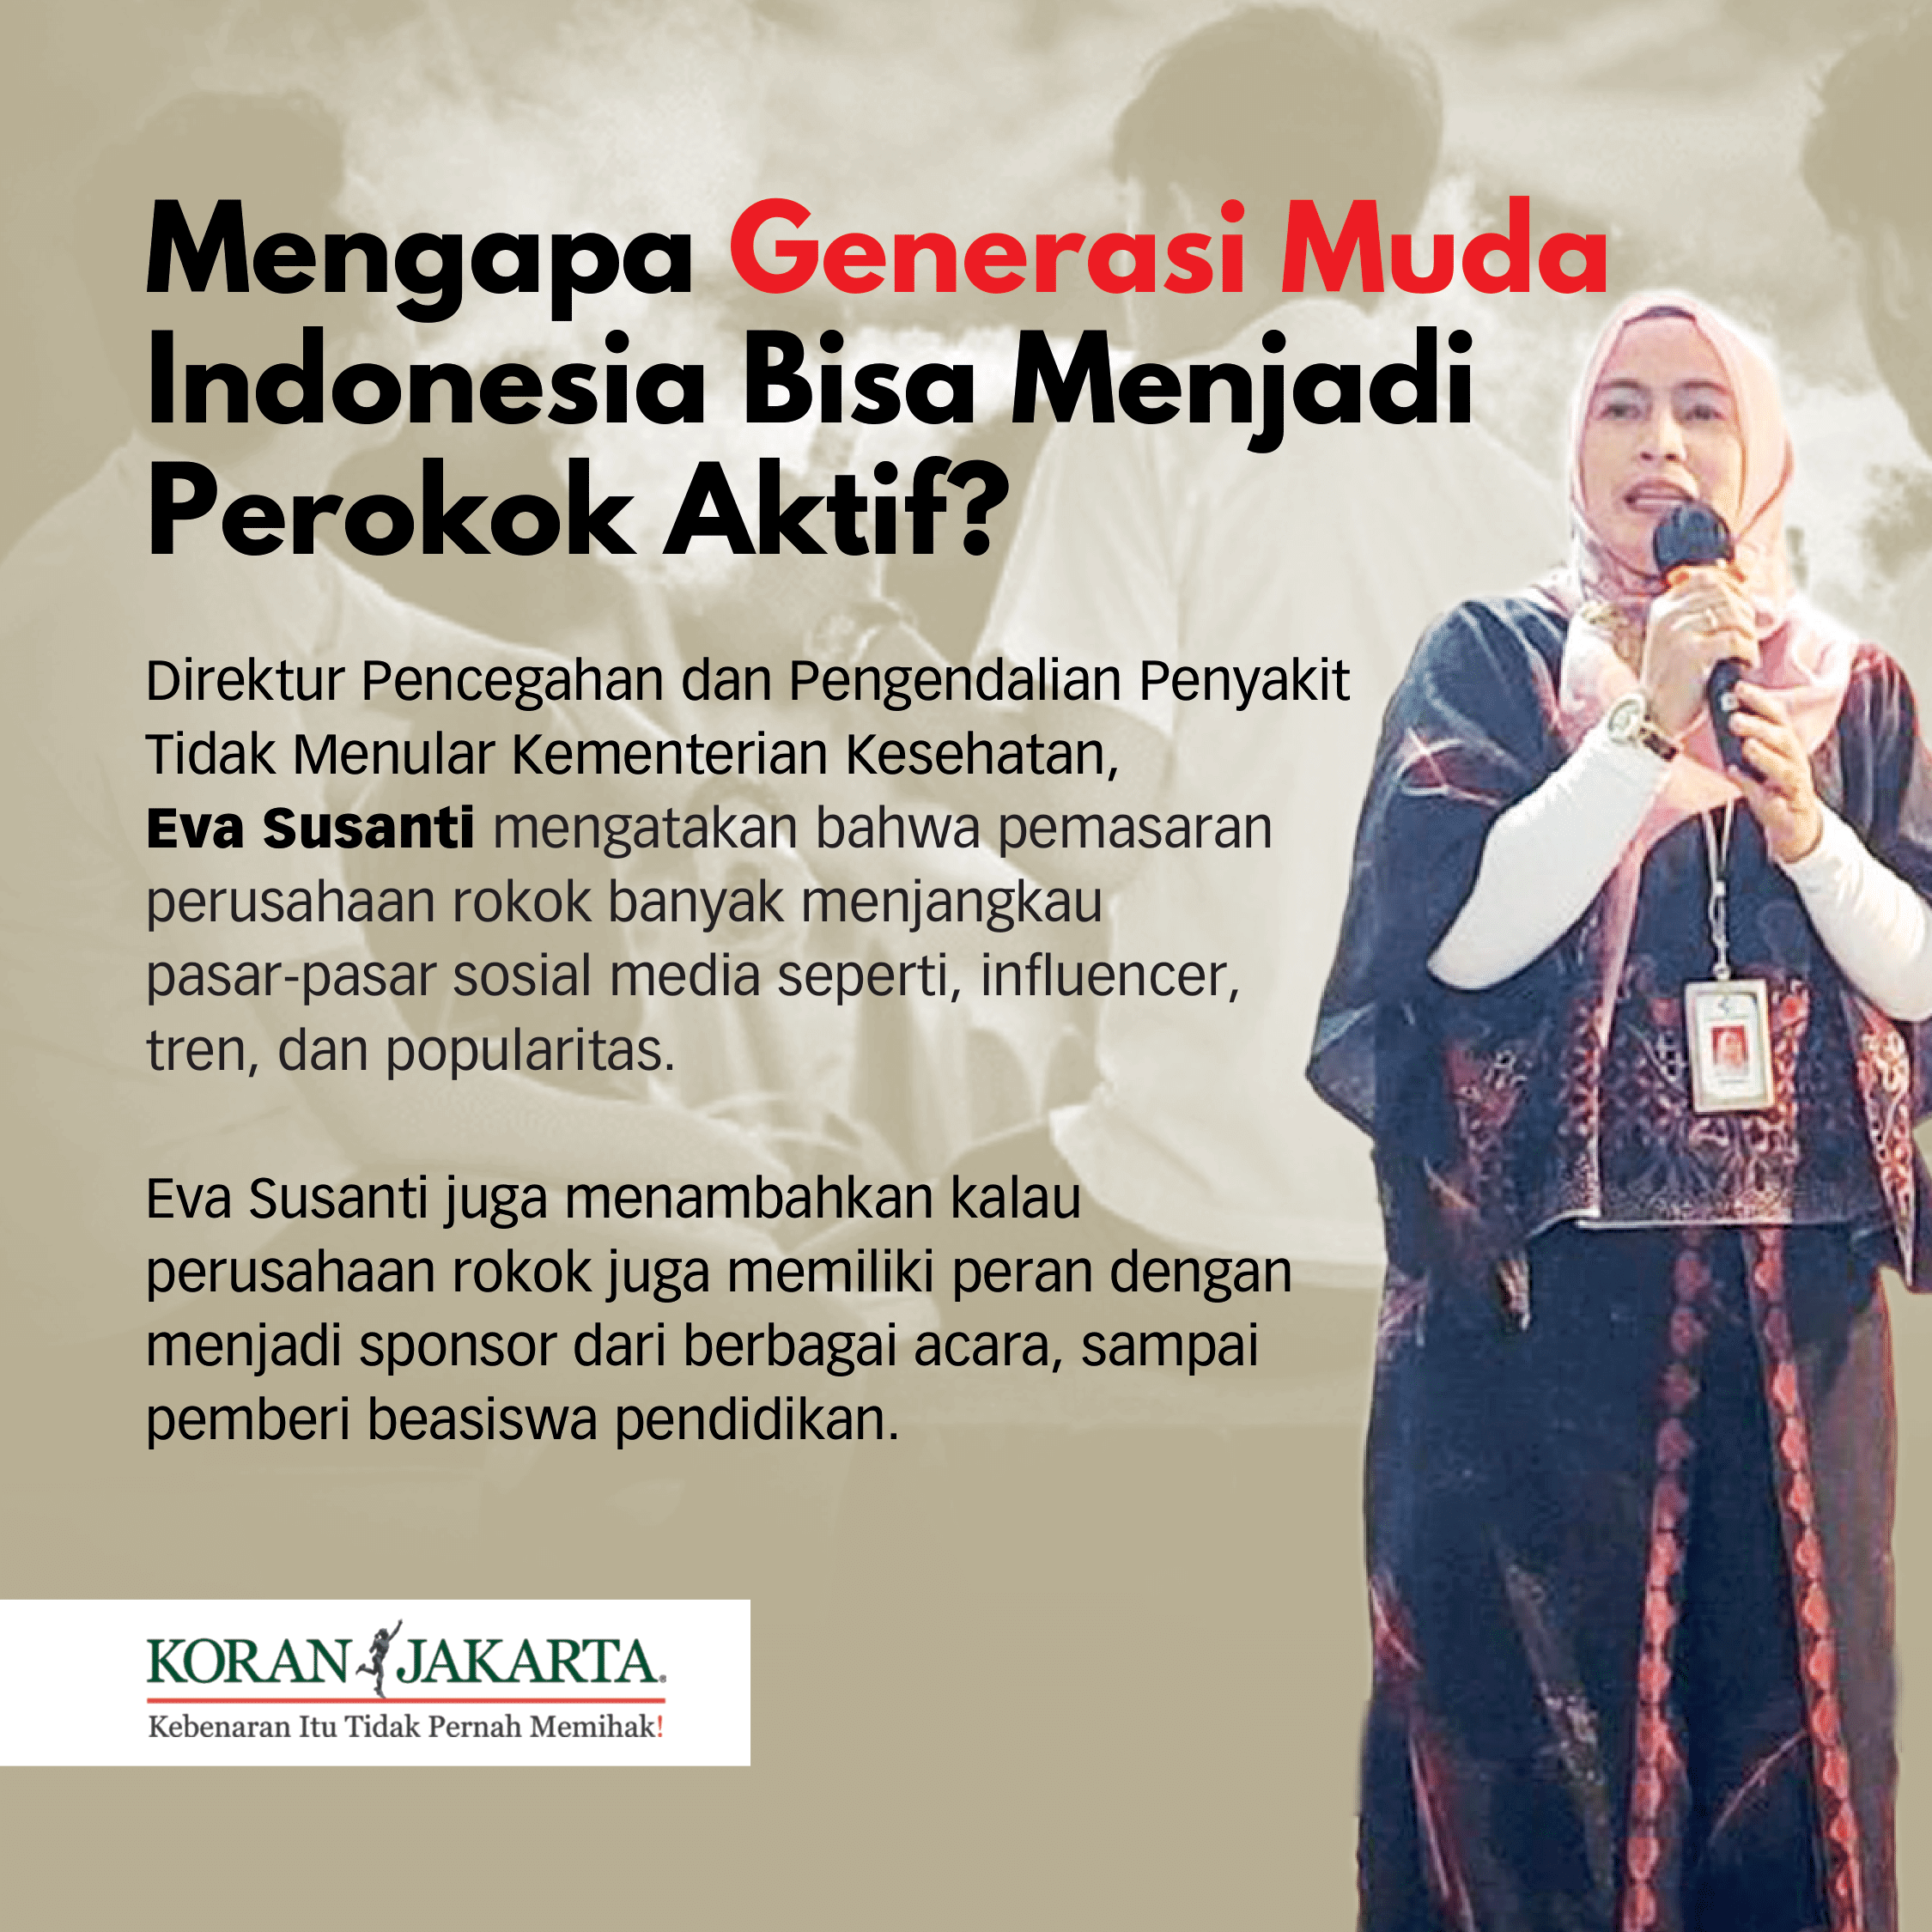 70 Juta Masyarakat Indonesia Merupakan Perokok Aktif, 7%nya Adalah Anak Muda! 4